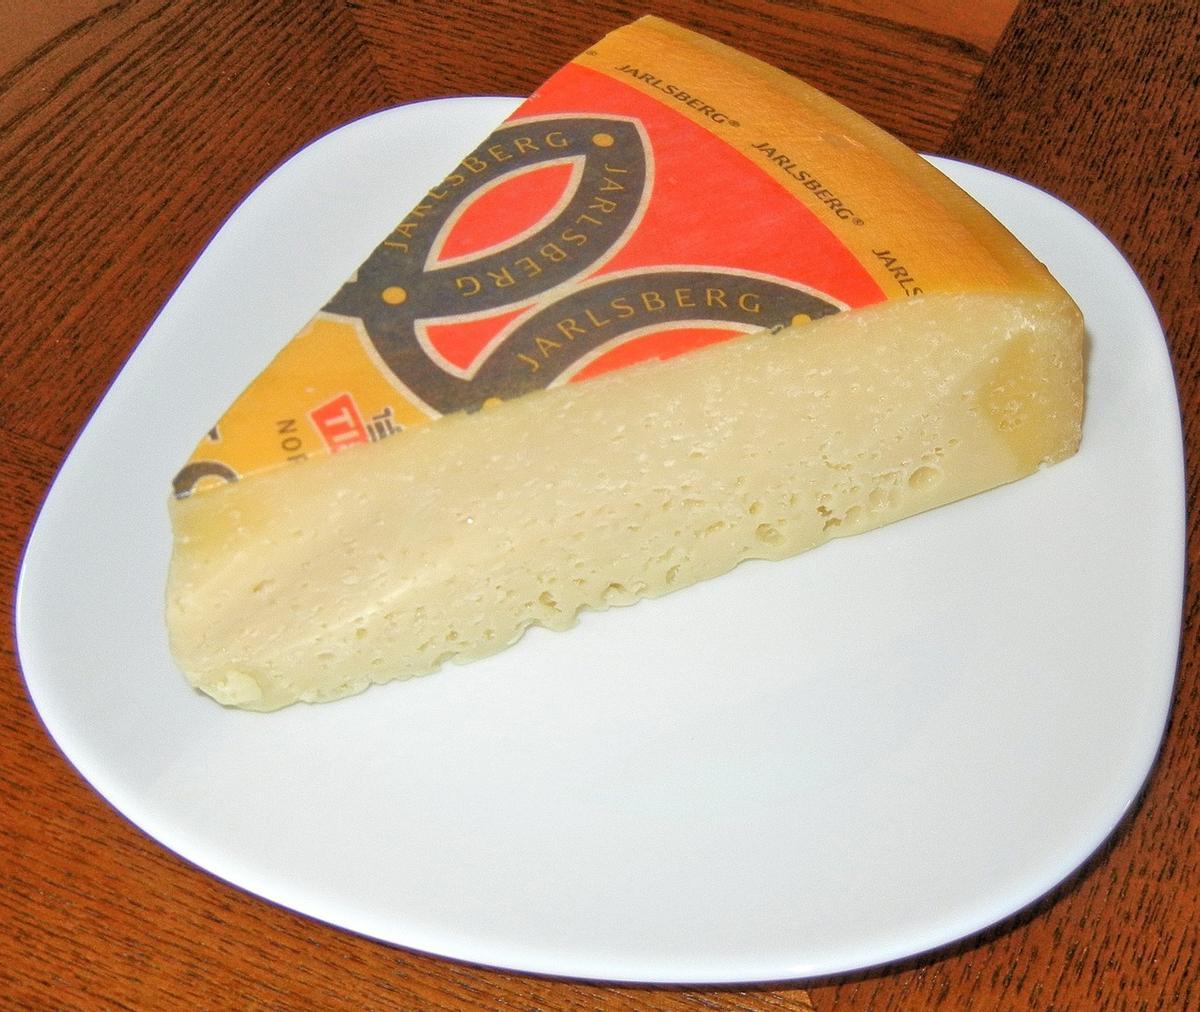 Una porción del queso analizado en el estudio y considerado muy saludable.